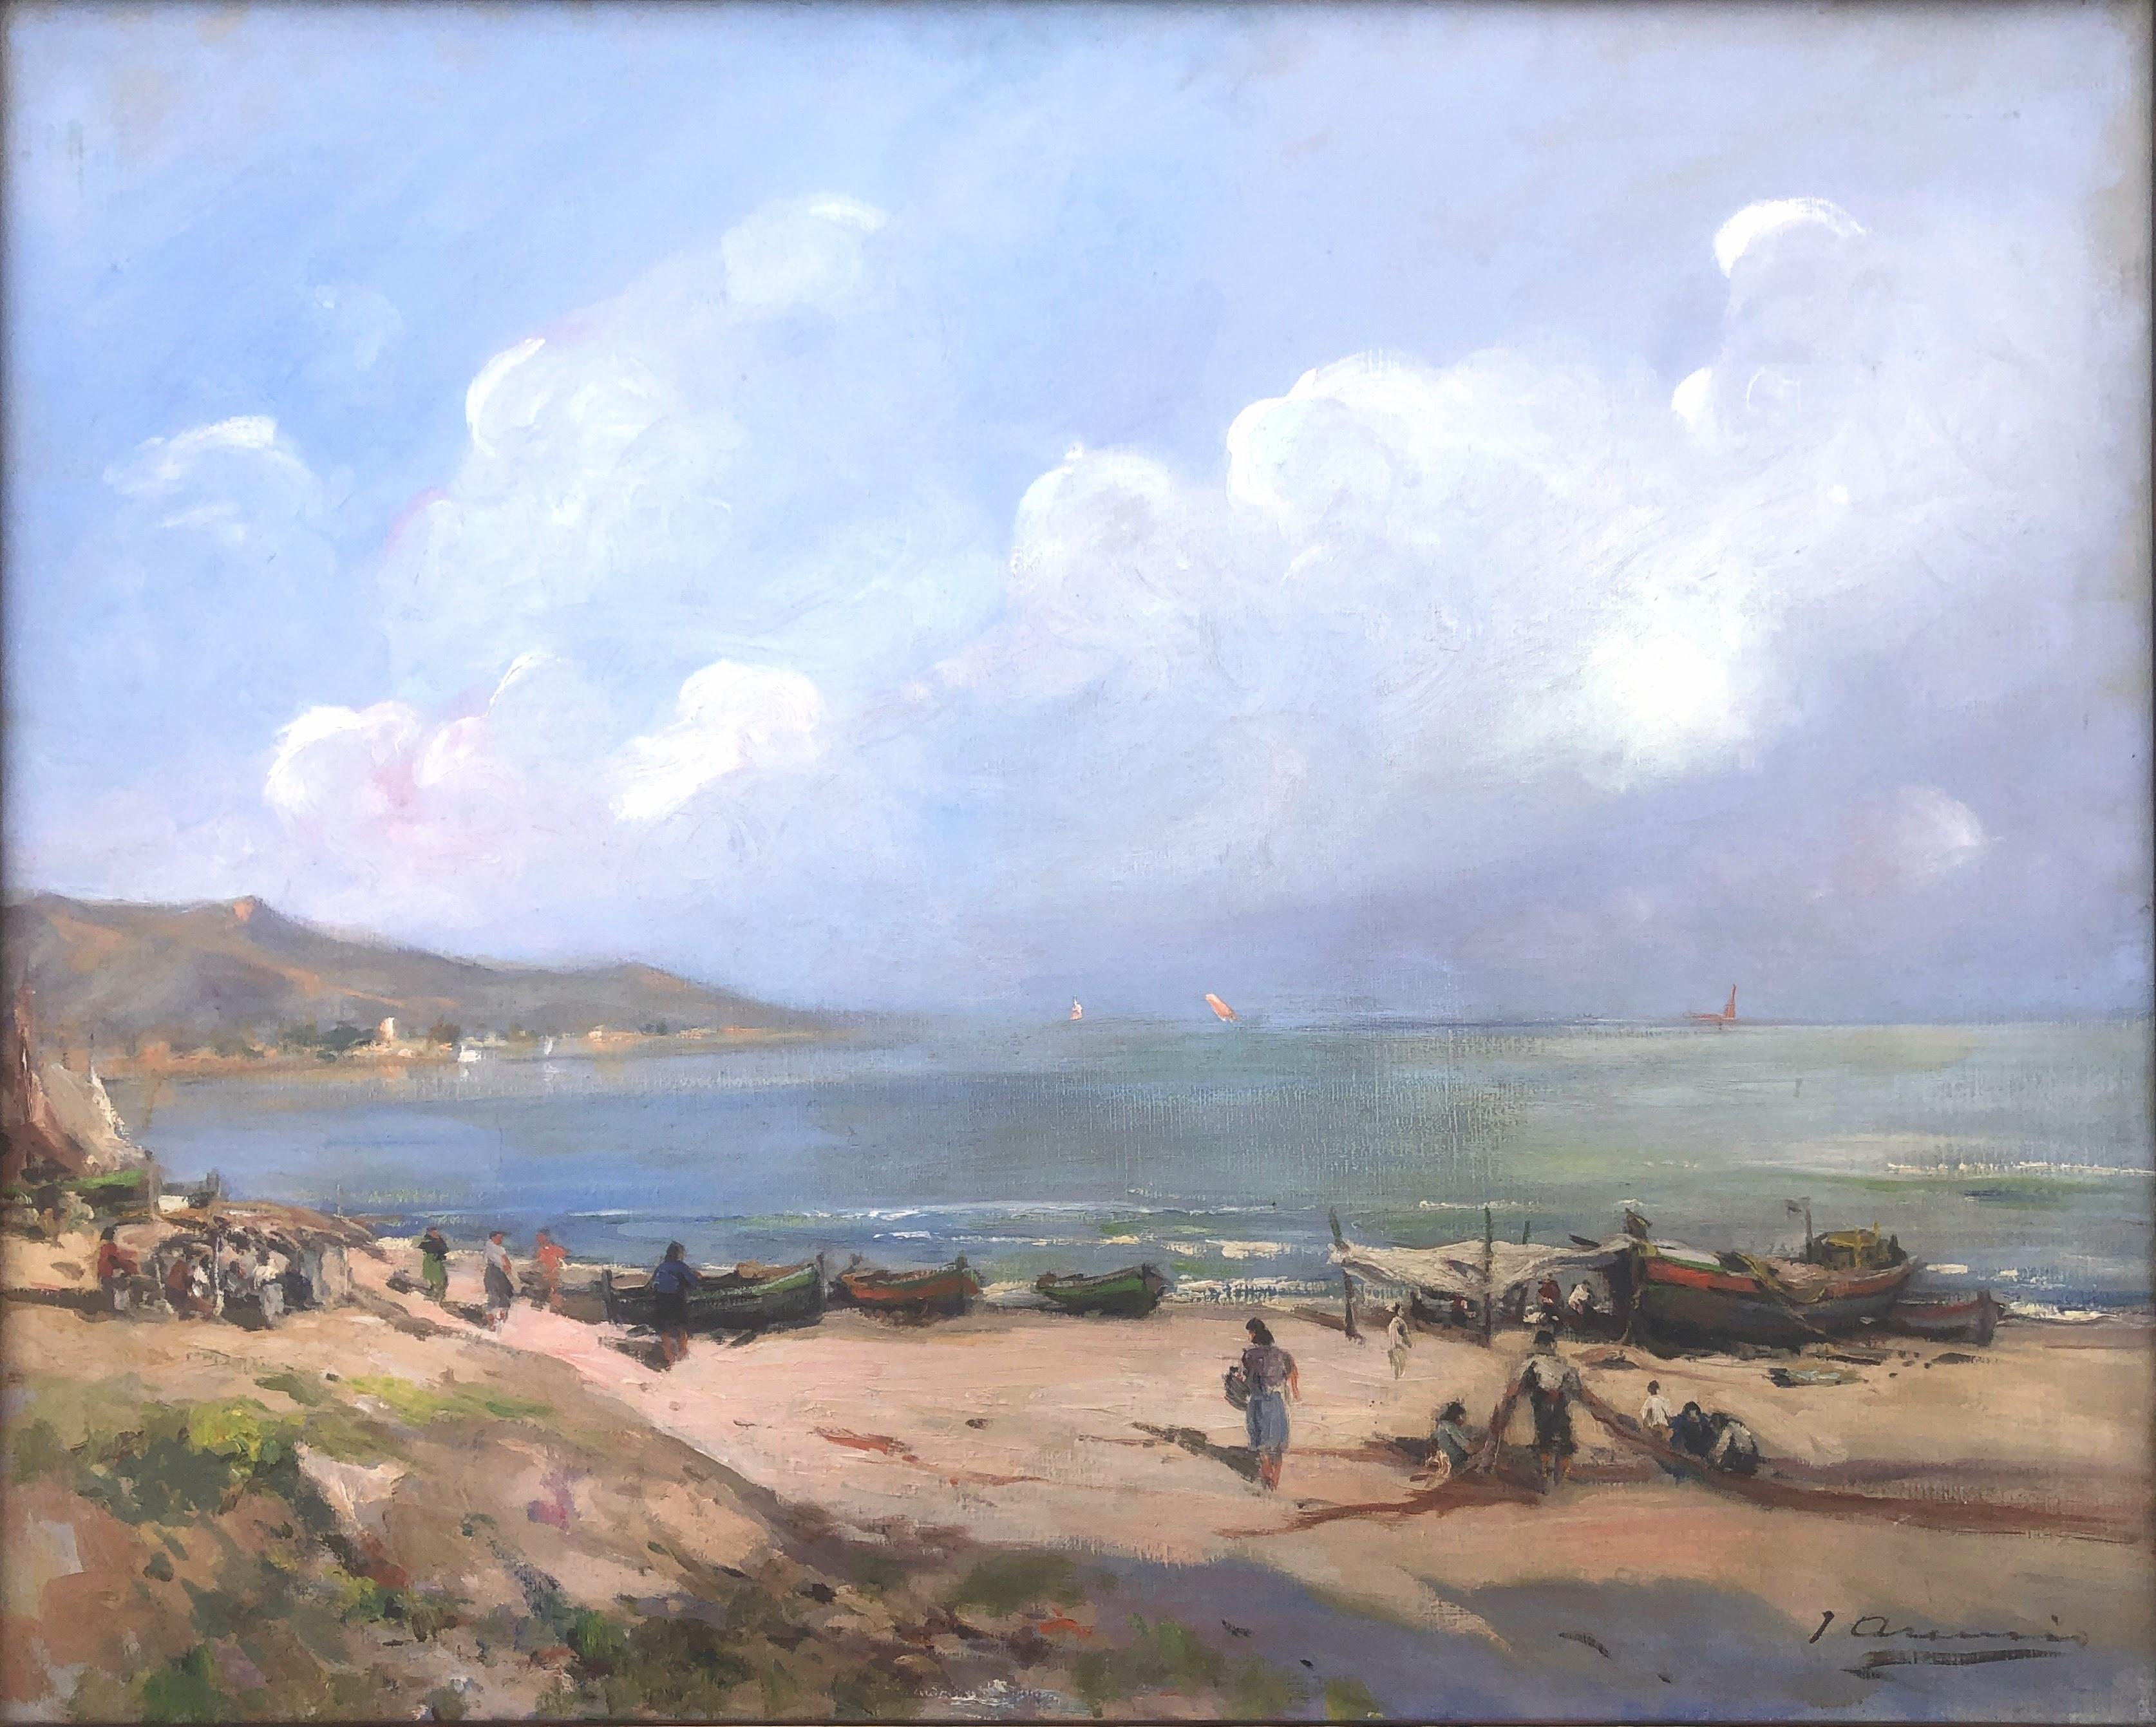 Landscape Painting Joan Asensio Marine - plage de pêcheurs paysage marin Espagne huile sur toile peinture méditerranéenne